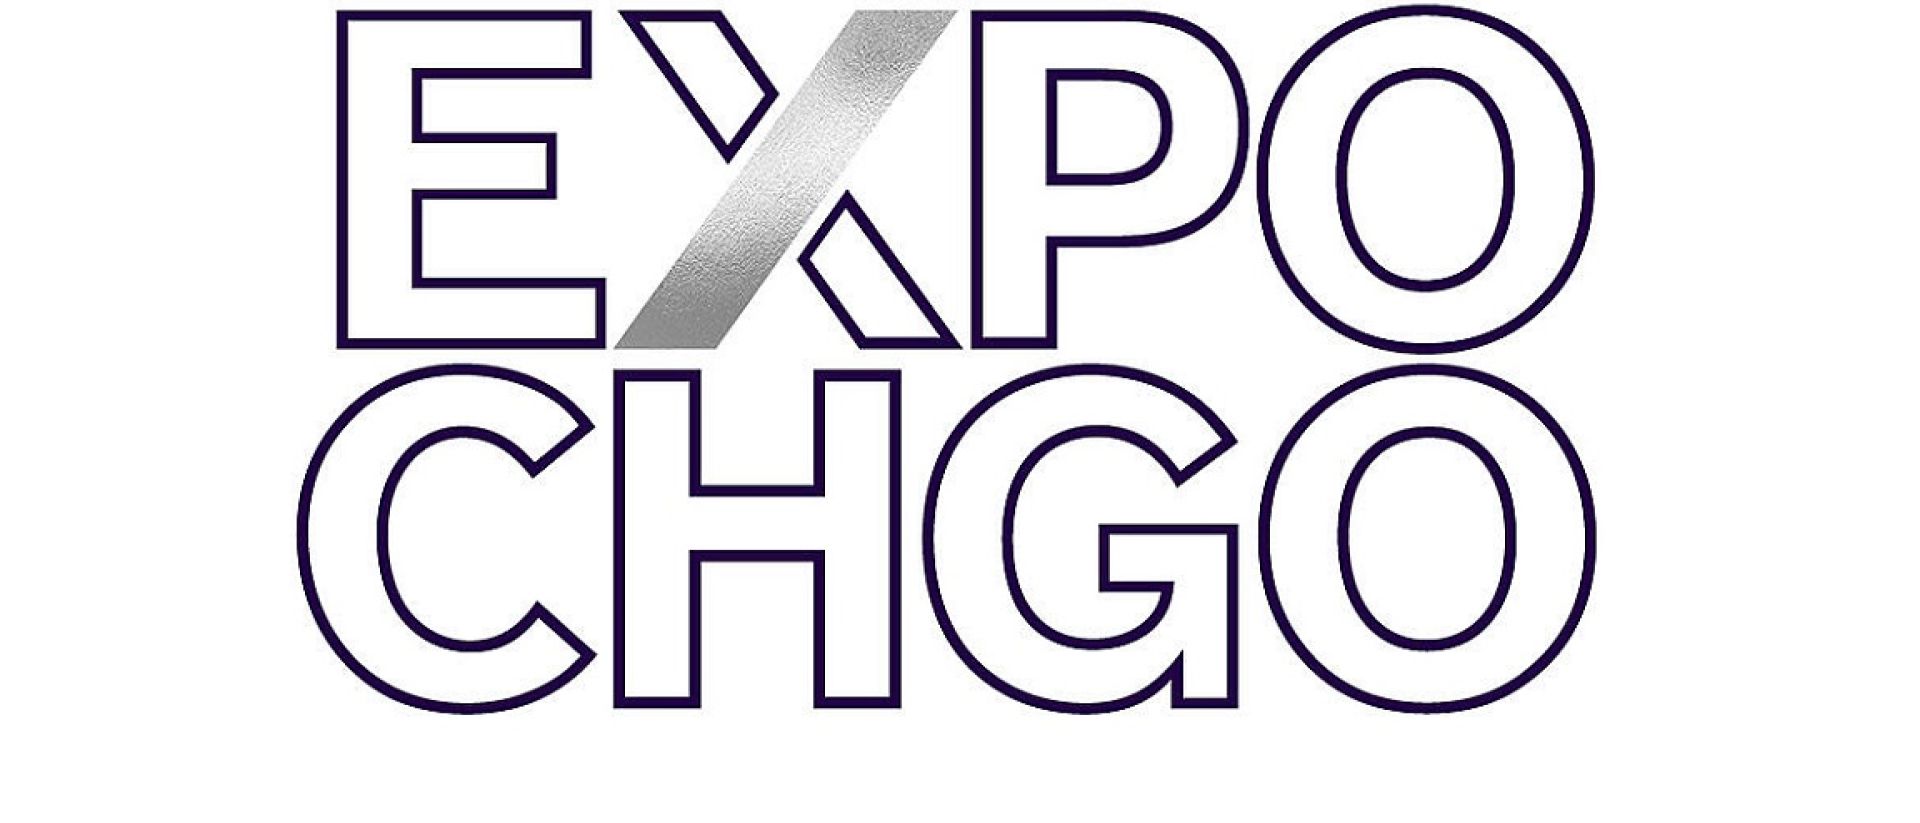 Expo Chicago anuncia expositores participantes de sua décima edição